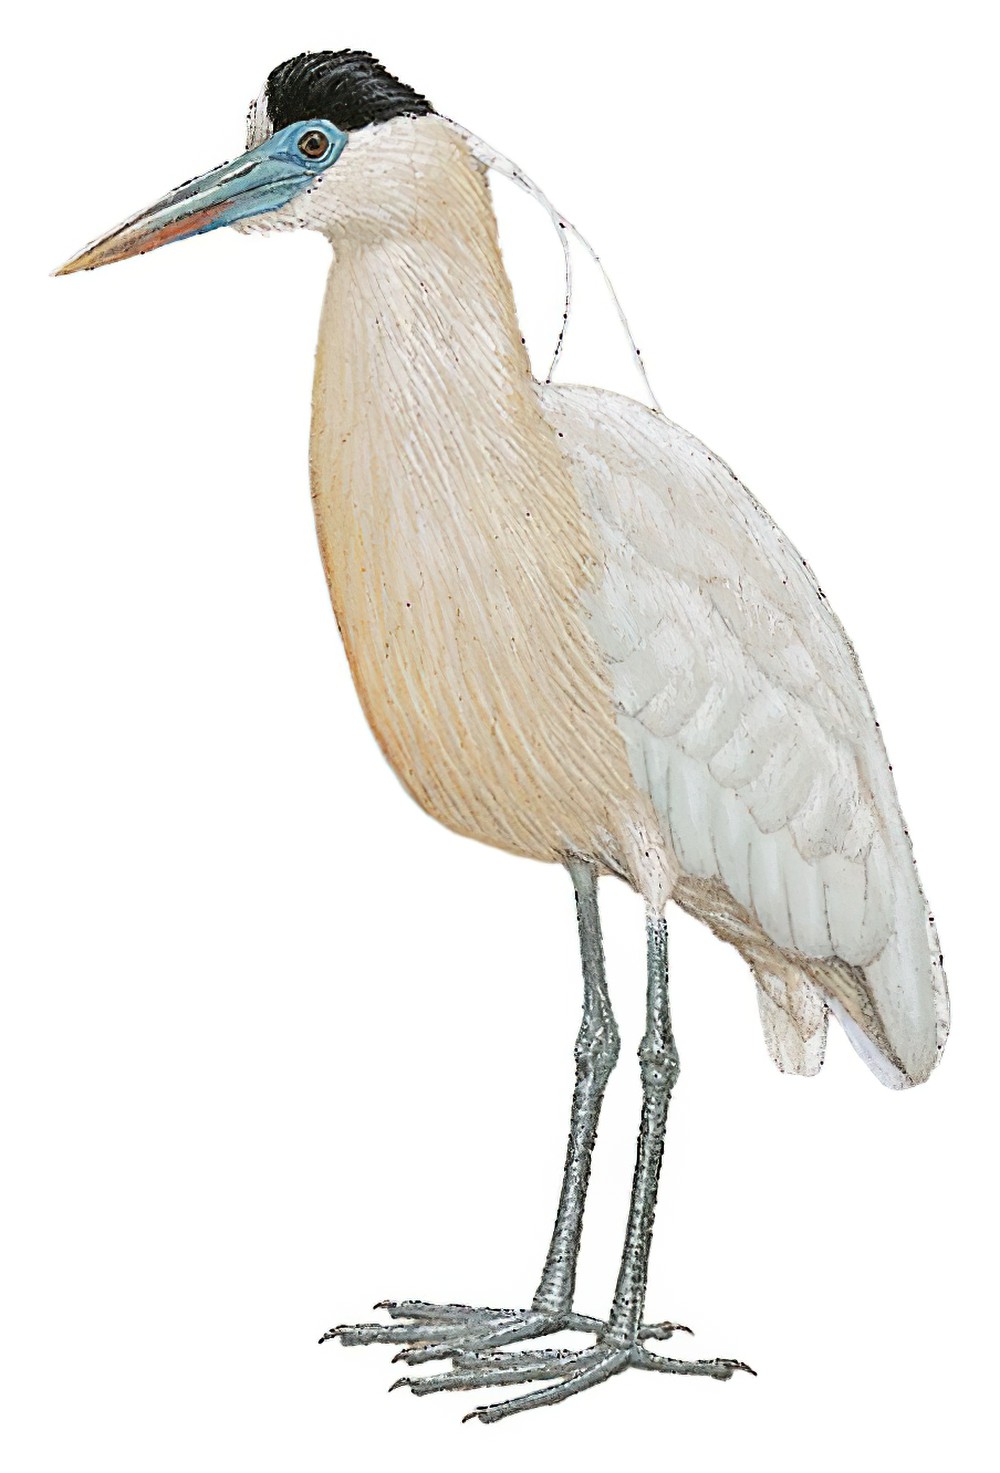 Capped Heron / Pilherodius pileatus